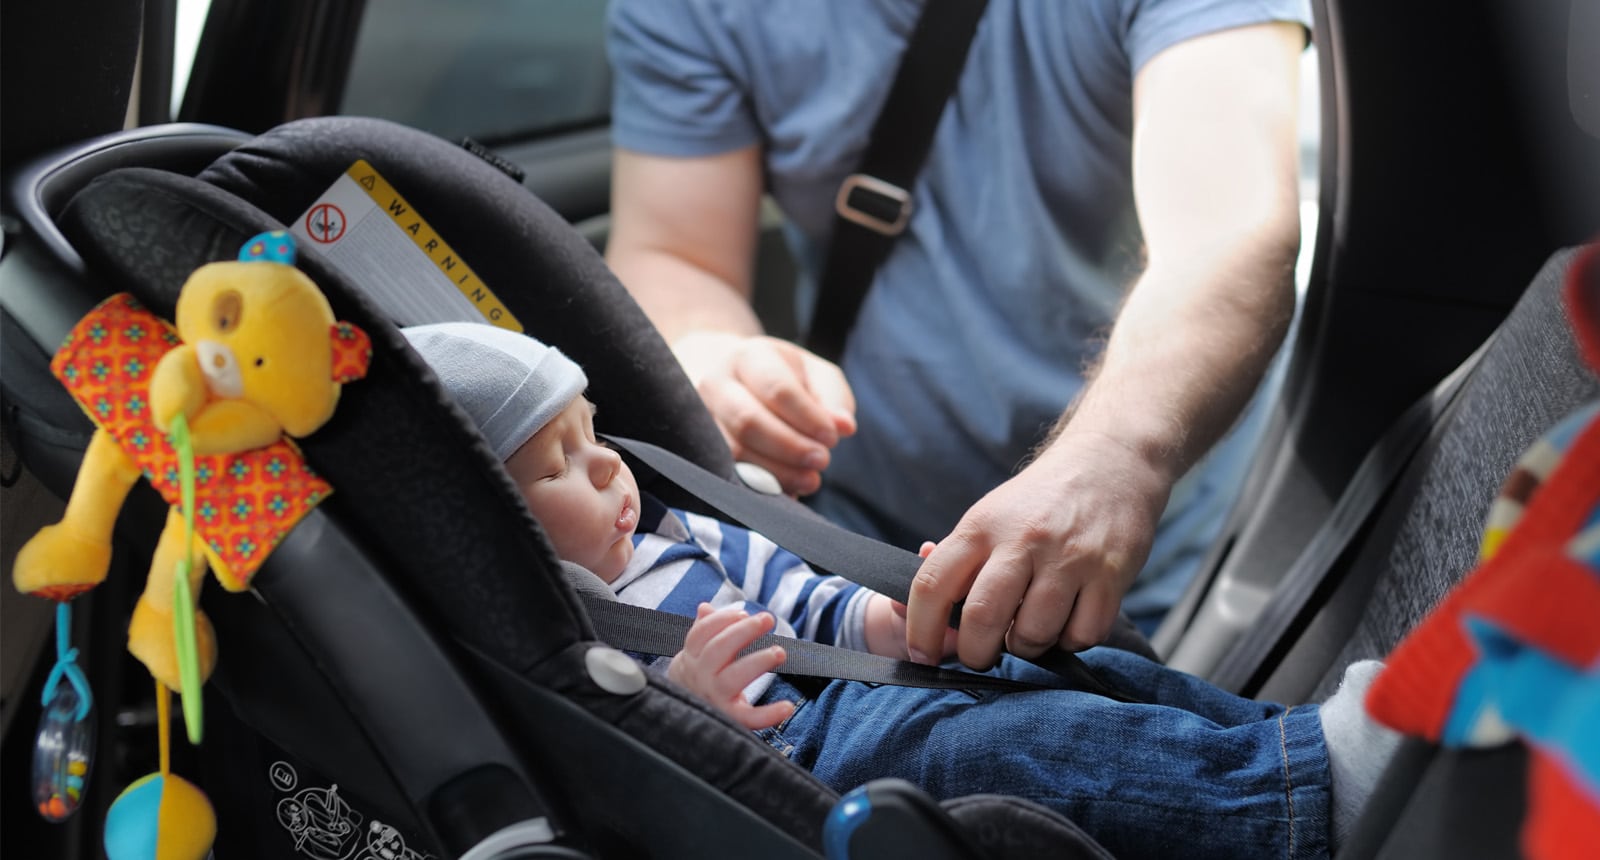 Reafirmar ayudar para jugar Qué dice la normativa sobre las sillas de coche para niños y bebés? -  Seguro Por Meses